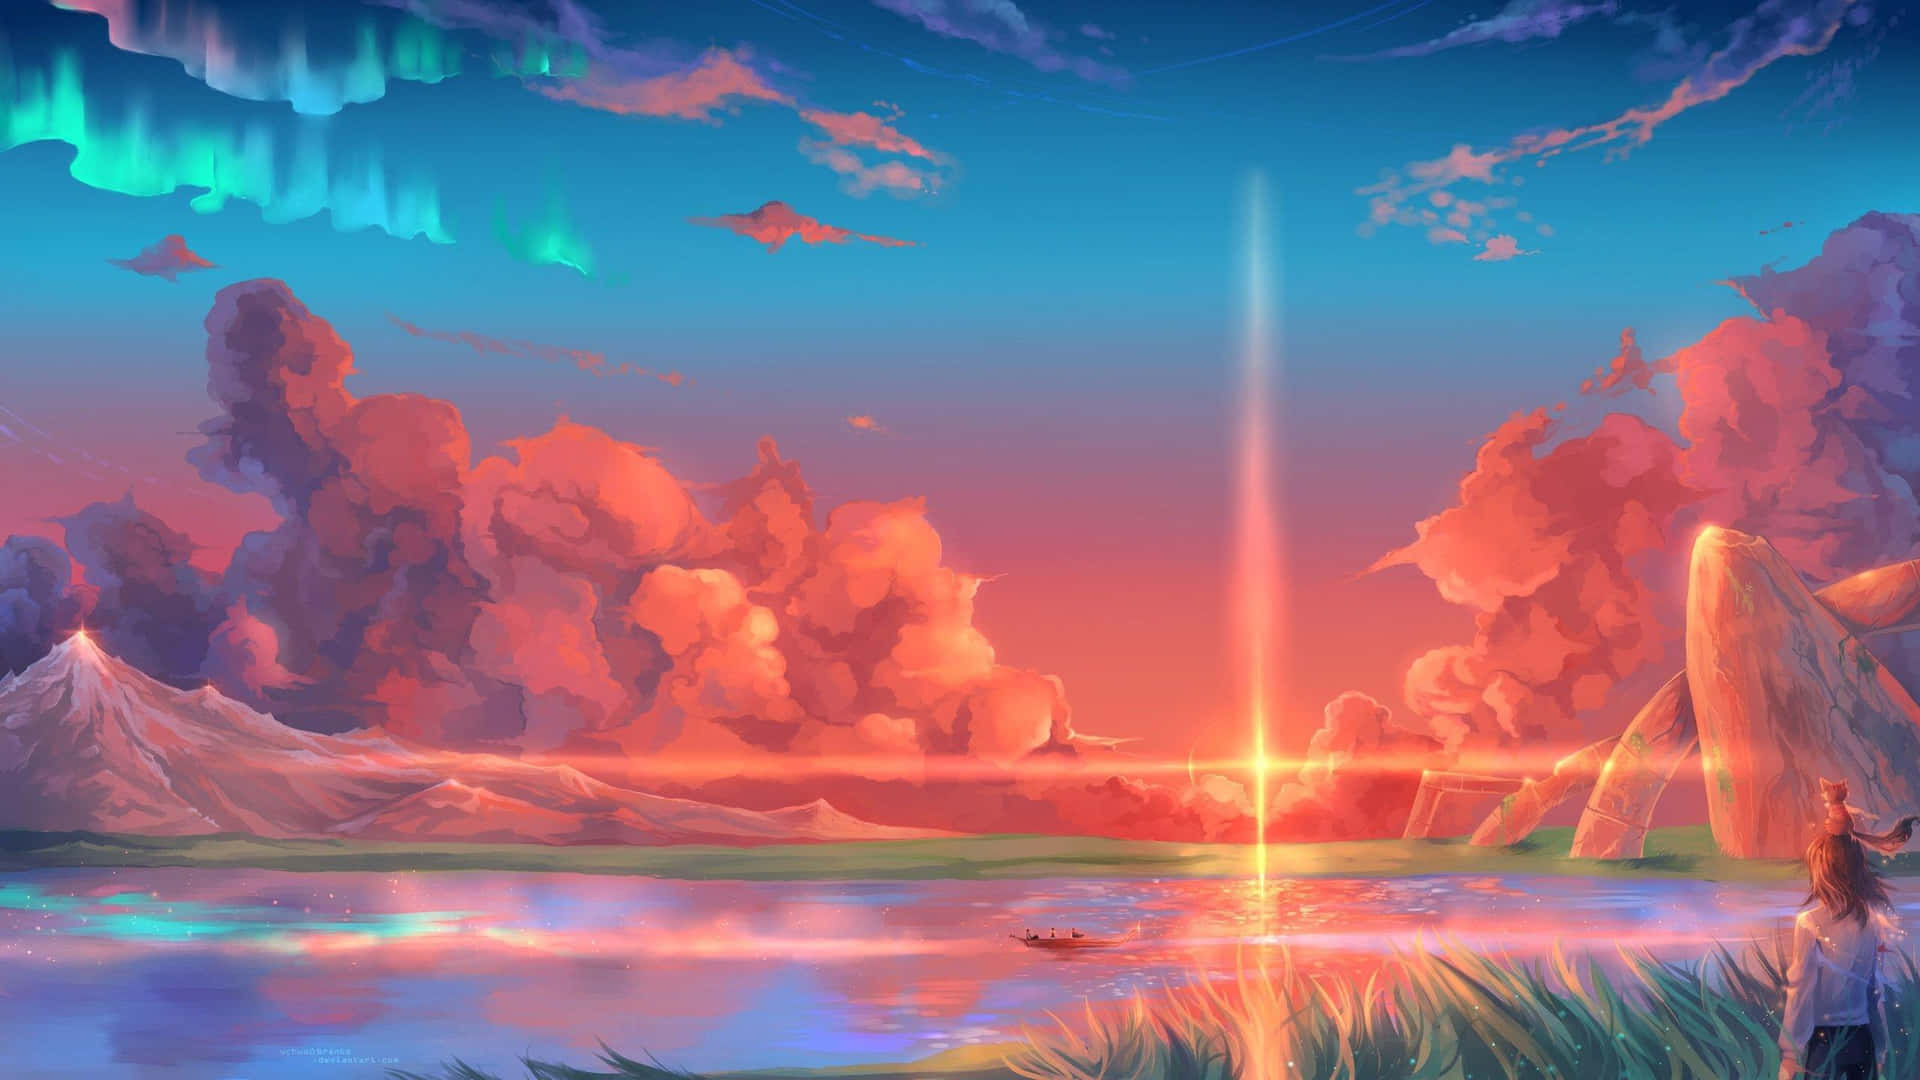 Fantasy Sunset Landscape.jpg Wallpaper